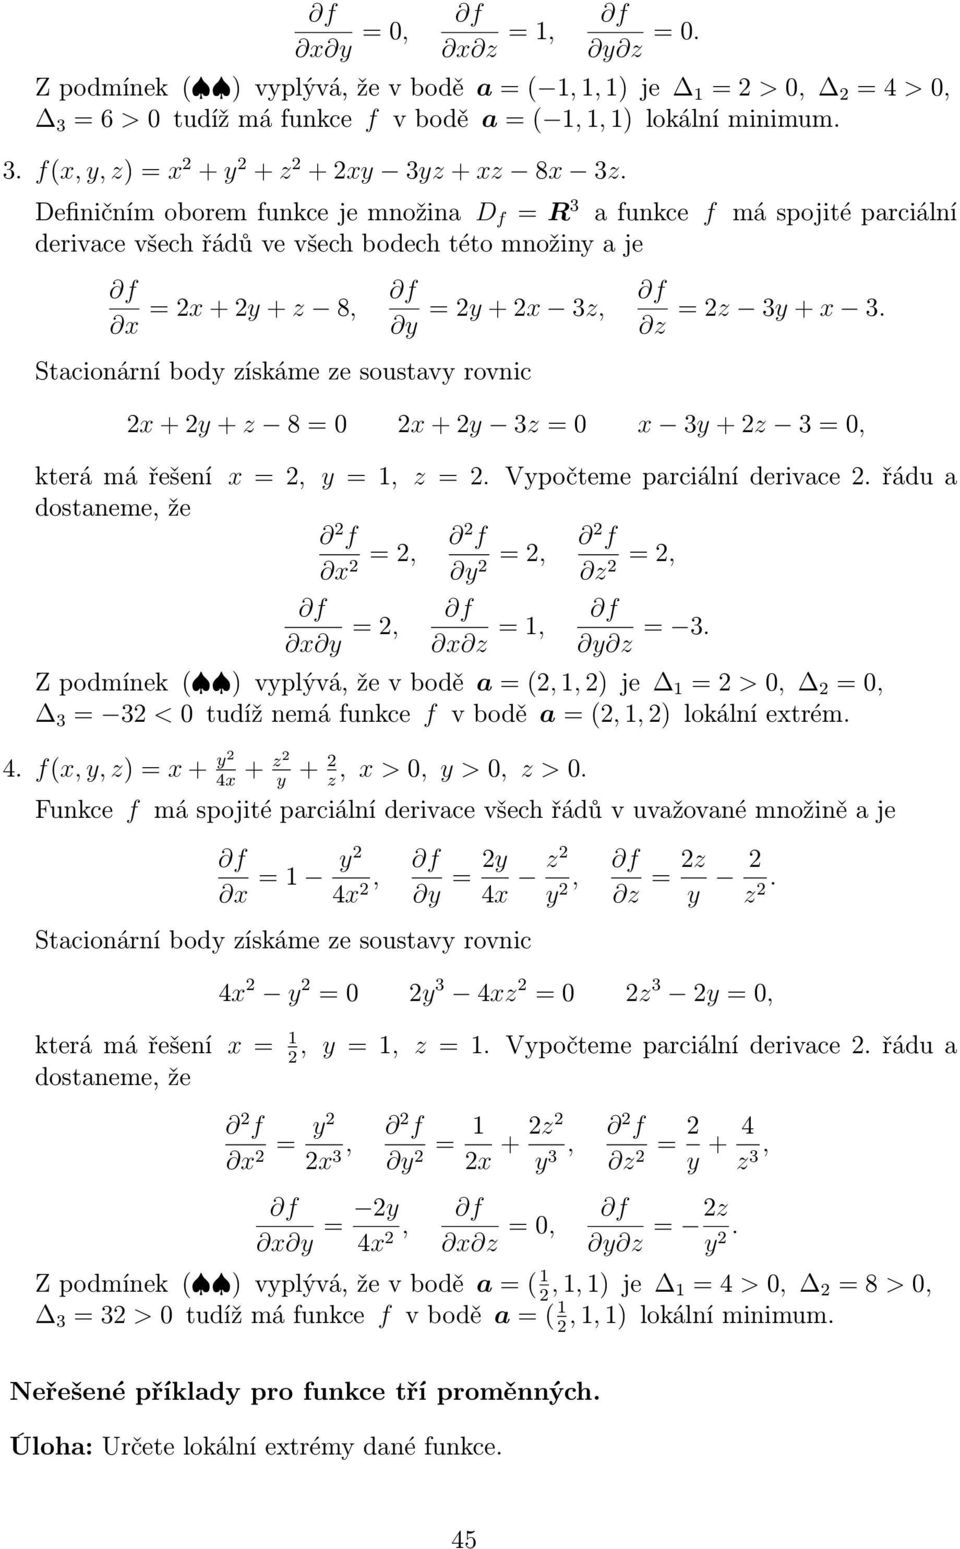 2x + 2y + z 8 = 0 2x + 2y 3z = 0 x 3y + 2z 3 = 0, která má řešení x = 2, y = 1, z = 2. Vypočteme parciální derivace 2. řádu a dostaneme, že x = 2, 2 = 2, 2 z = 2, 2 x = 2, x z = 1, z = 3.